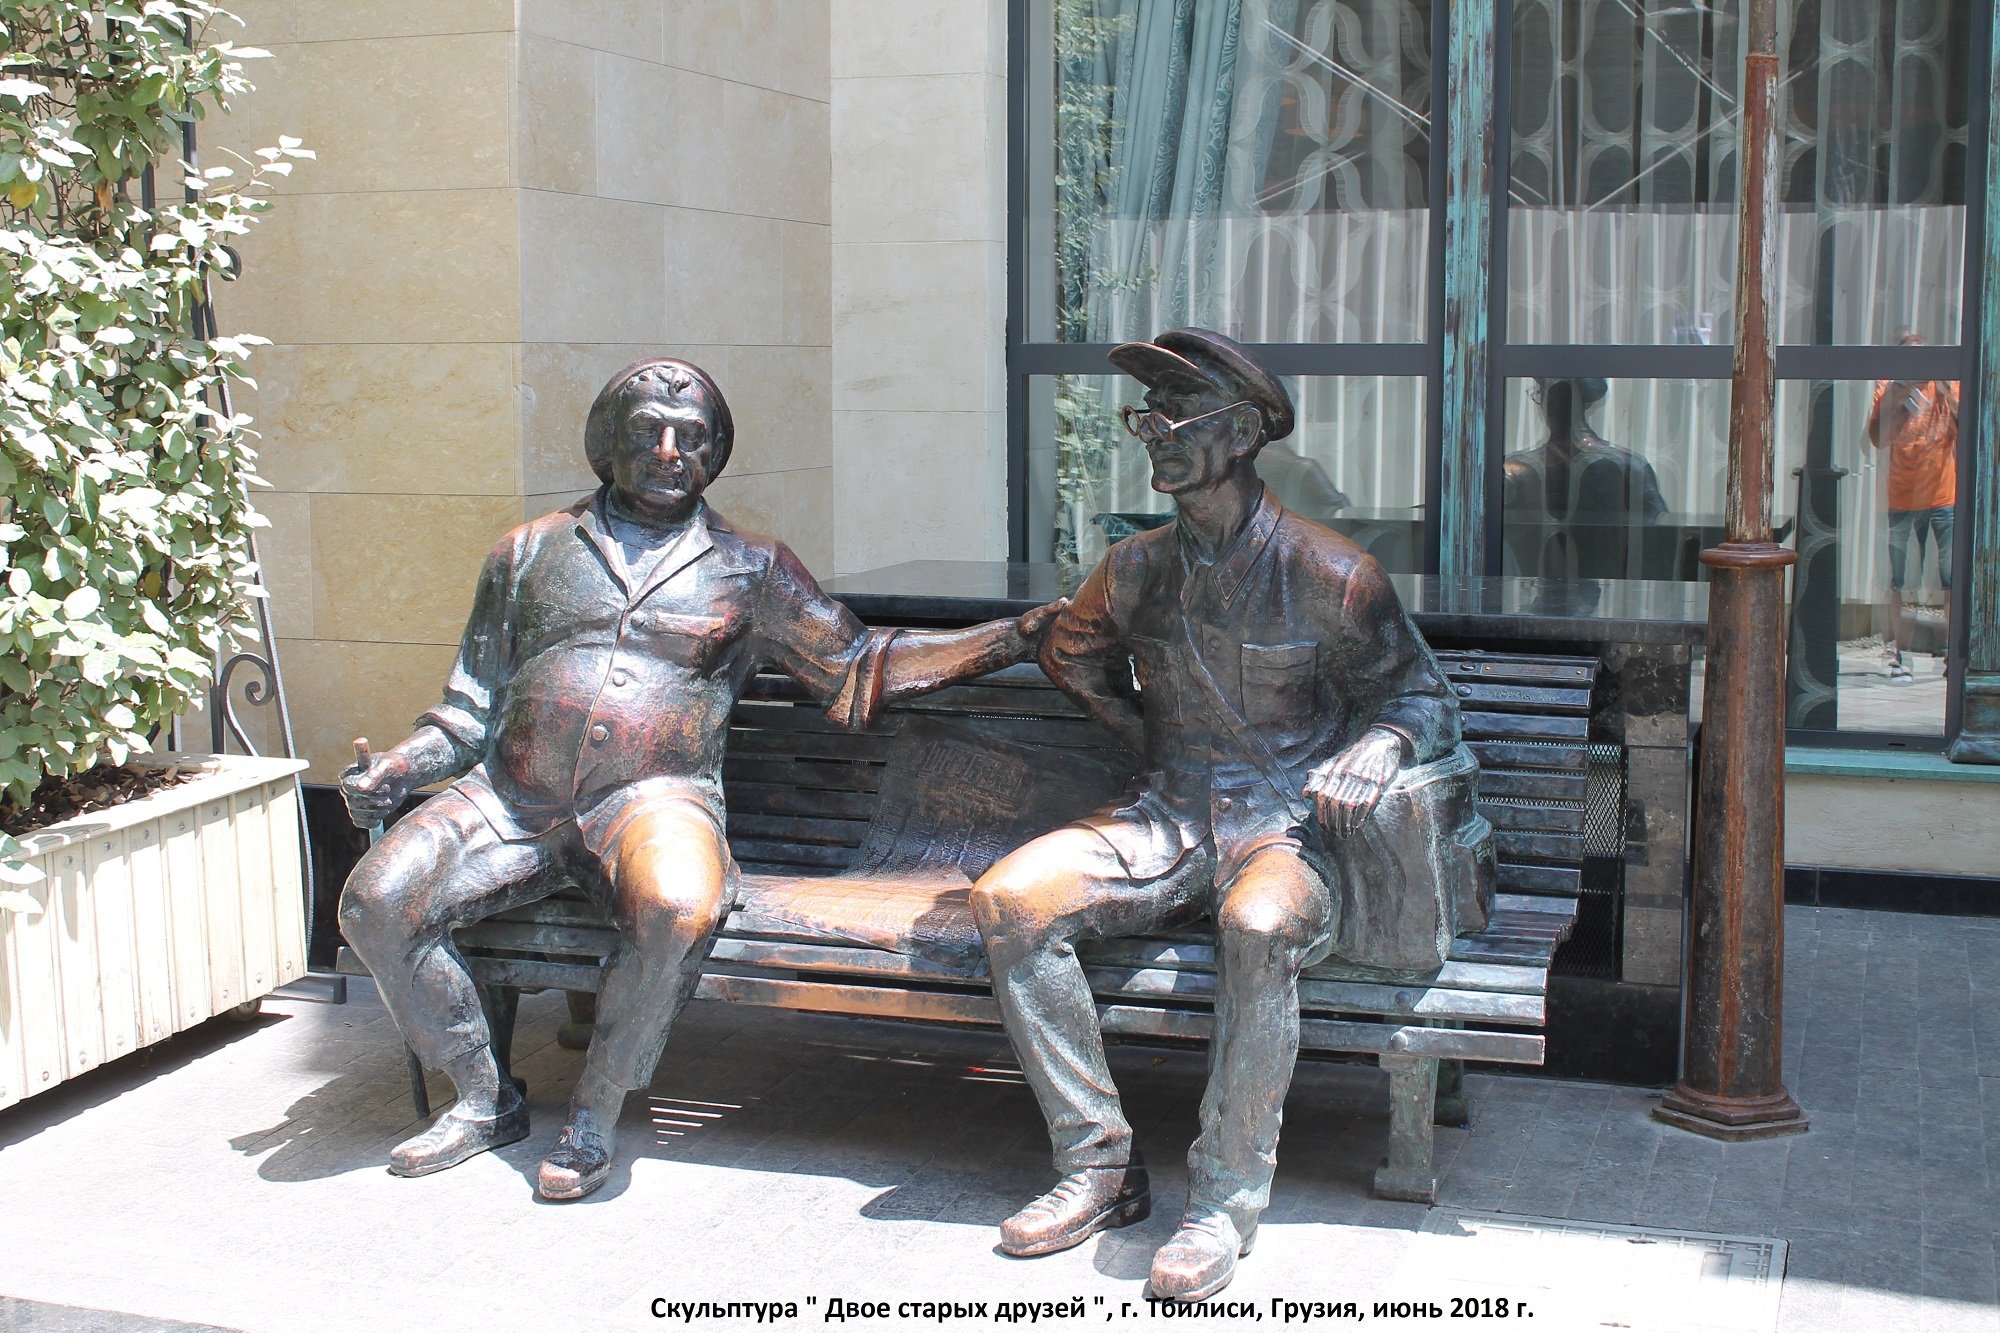 Двое старый друг. Памятник двое друзей Тбилиси. Скульптура на улице Шавтели в Тбилиси. Памятник иетиме Гурджи Тбилиси. Тбилиси памятник балбесу.